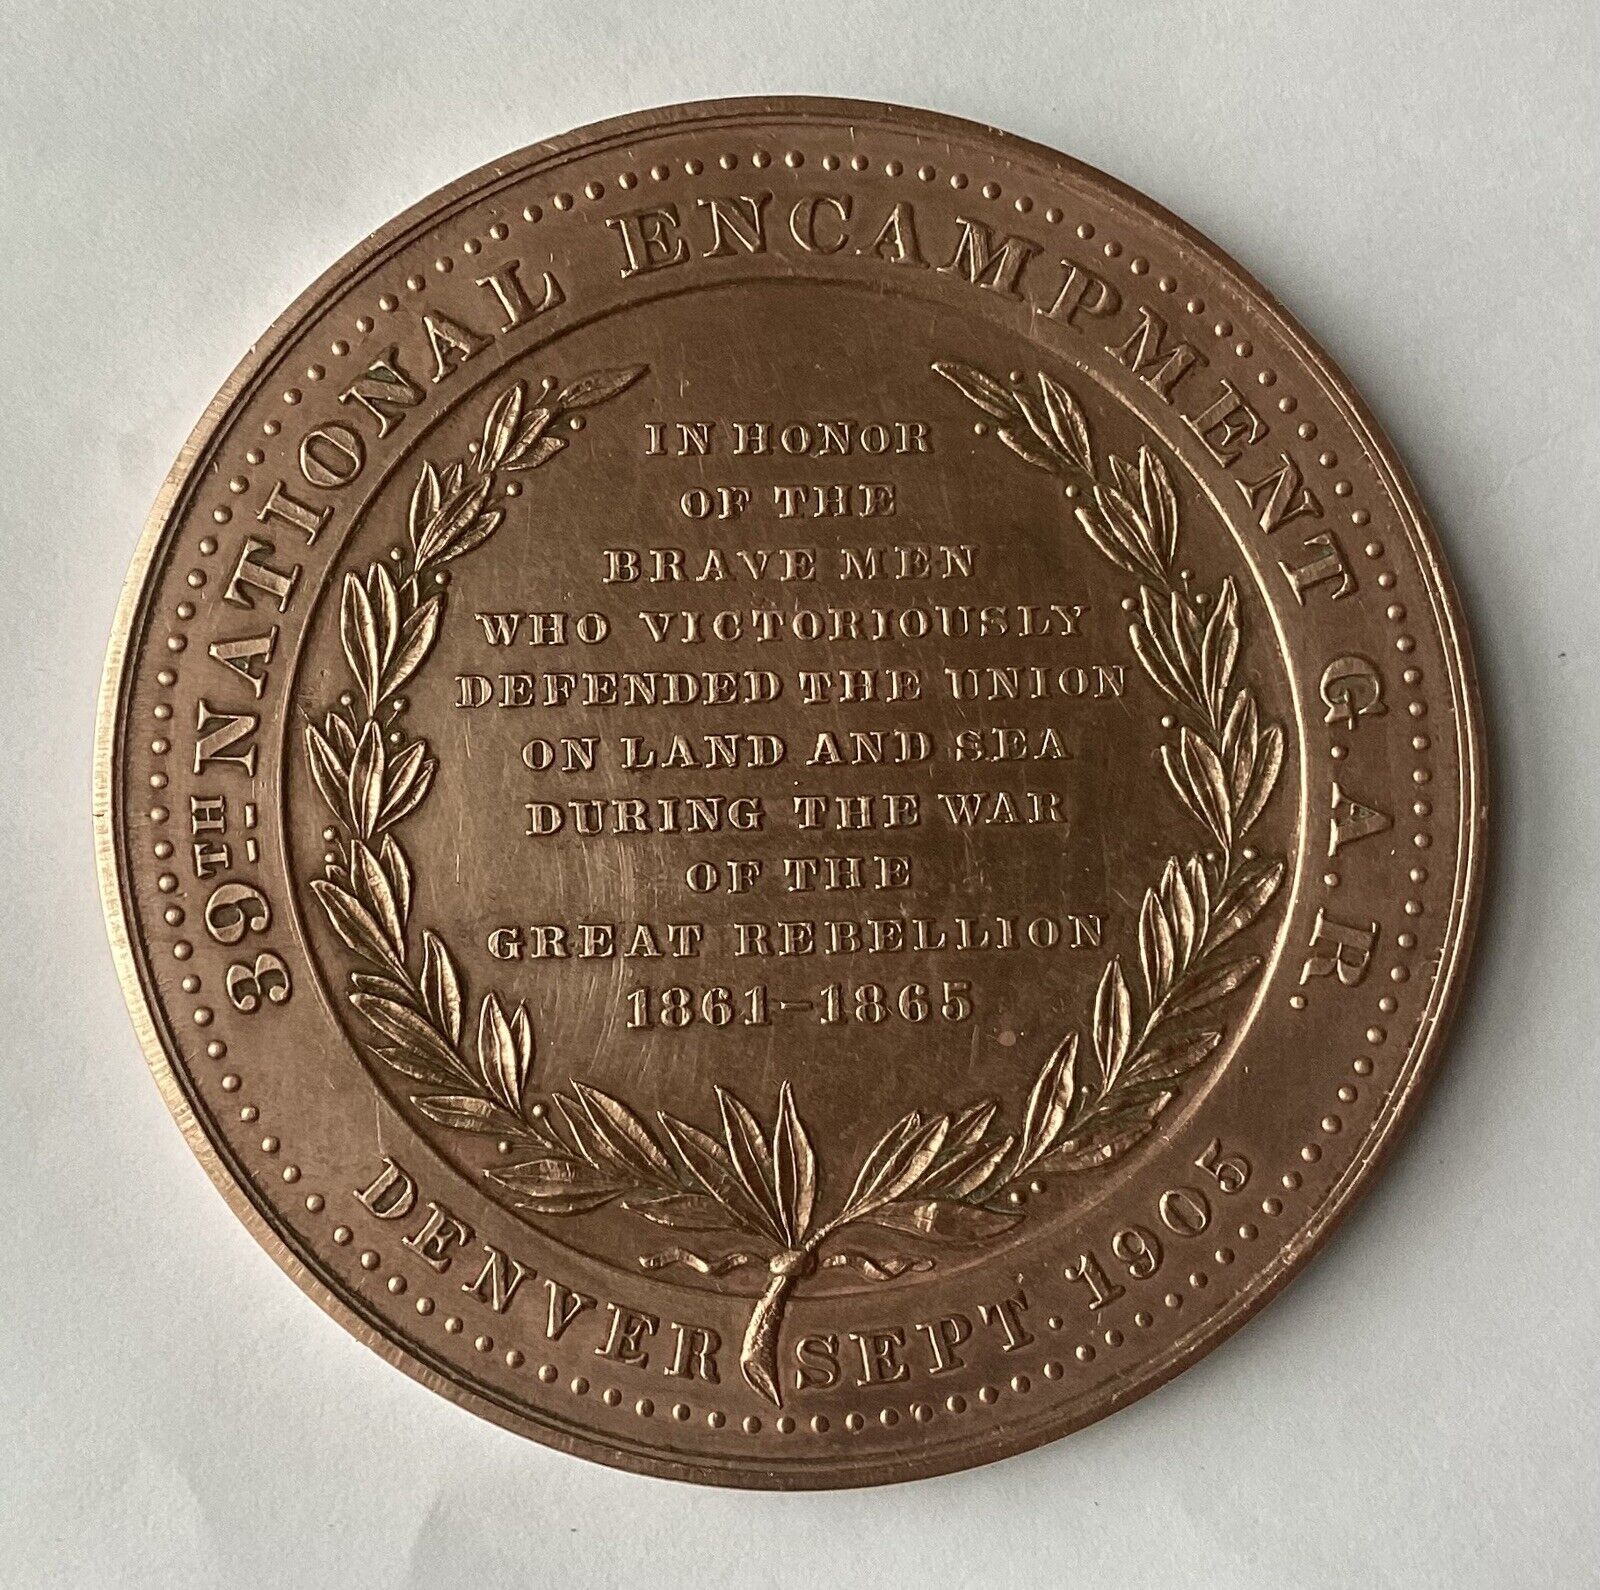 Antique Sept 1905 Denver 39th National Encampment G.A.R. Bronze Medal 1861-1865